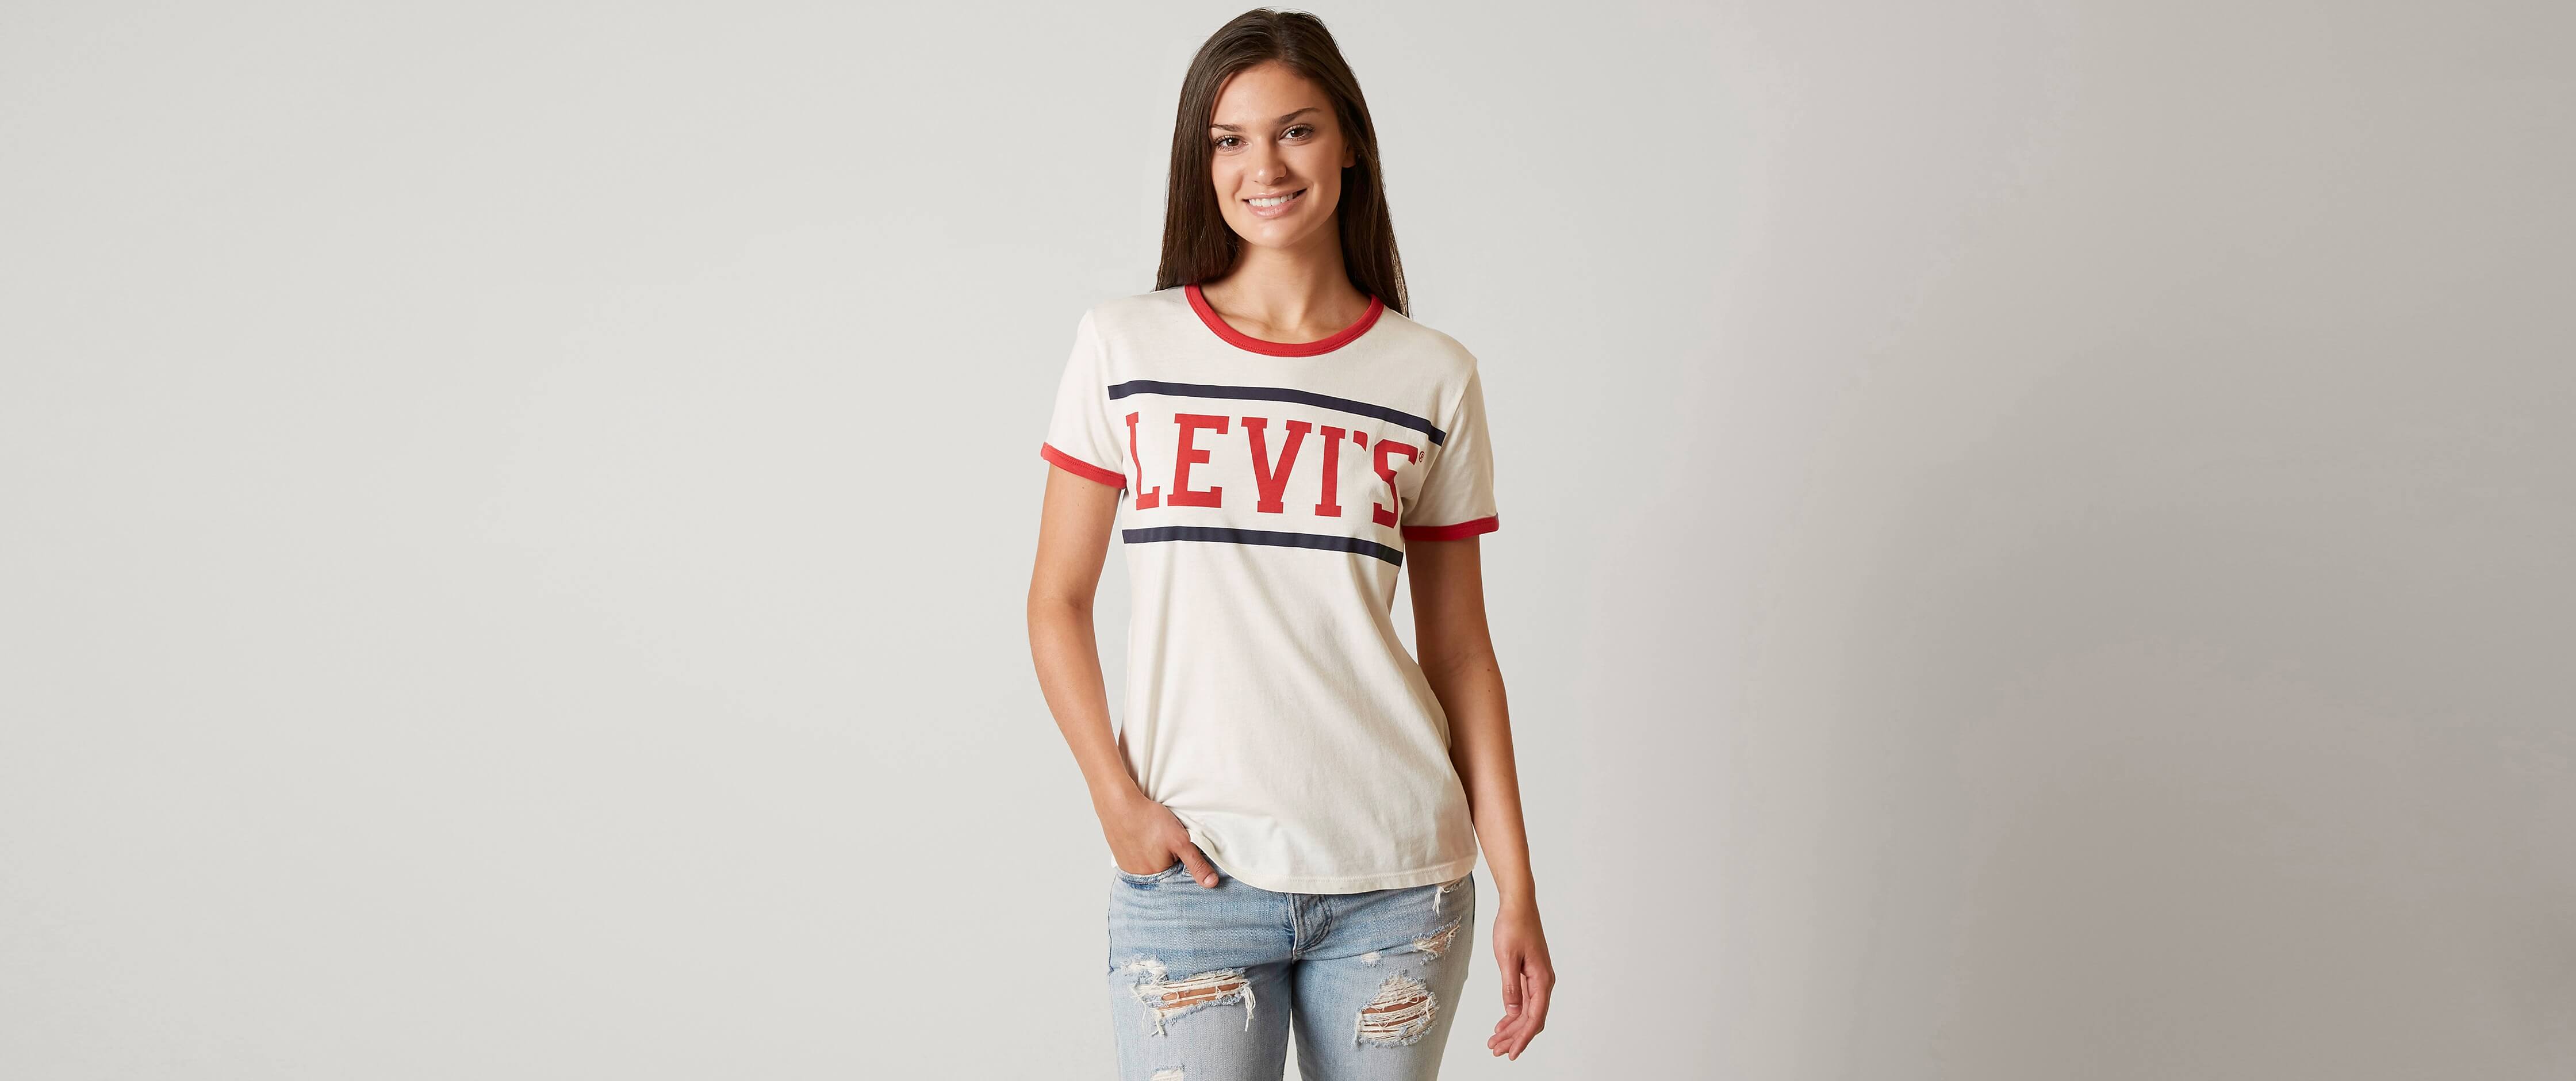 Levis Tshirt Womens Sale | RLDM